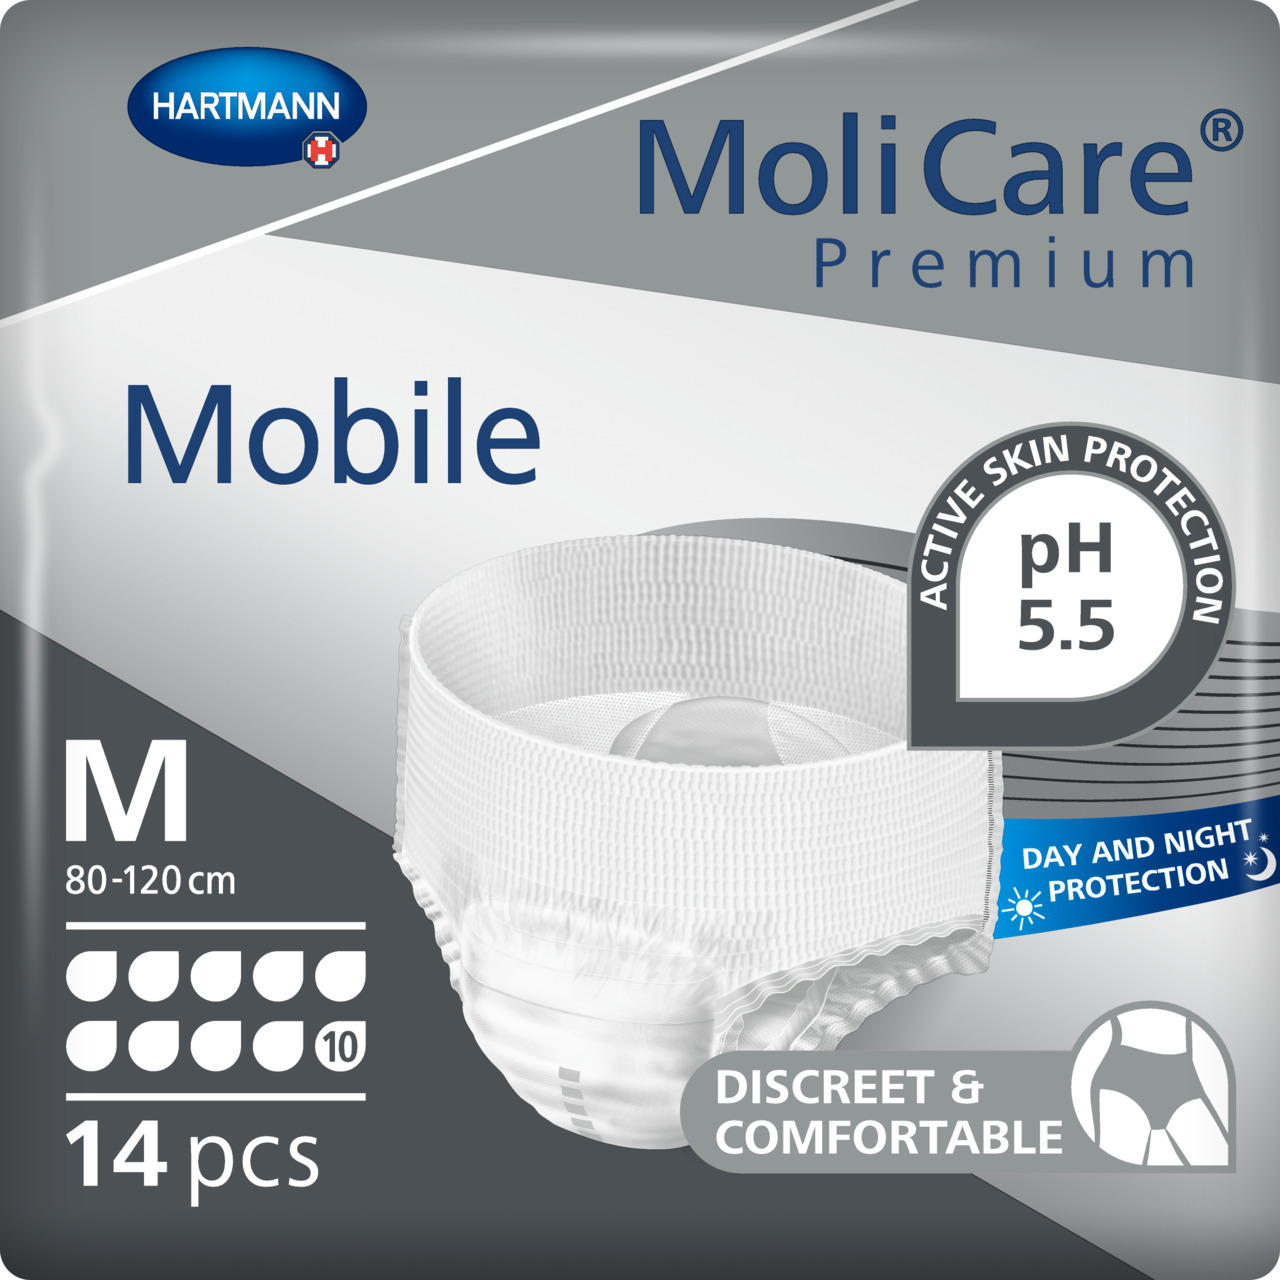 MoliCare® Premium Mobile 10 Drops